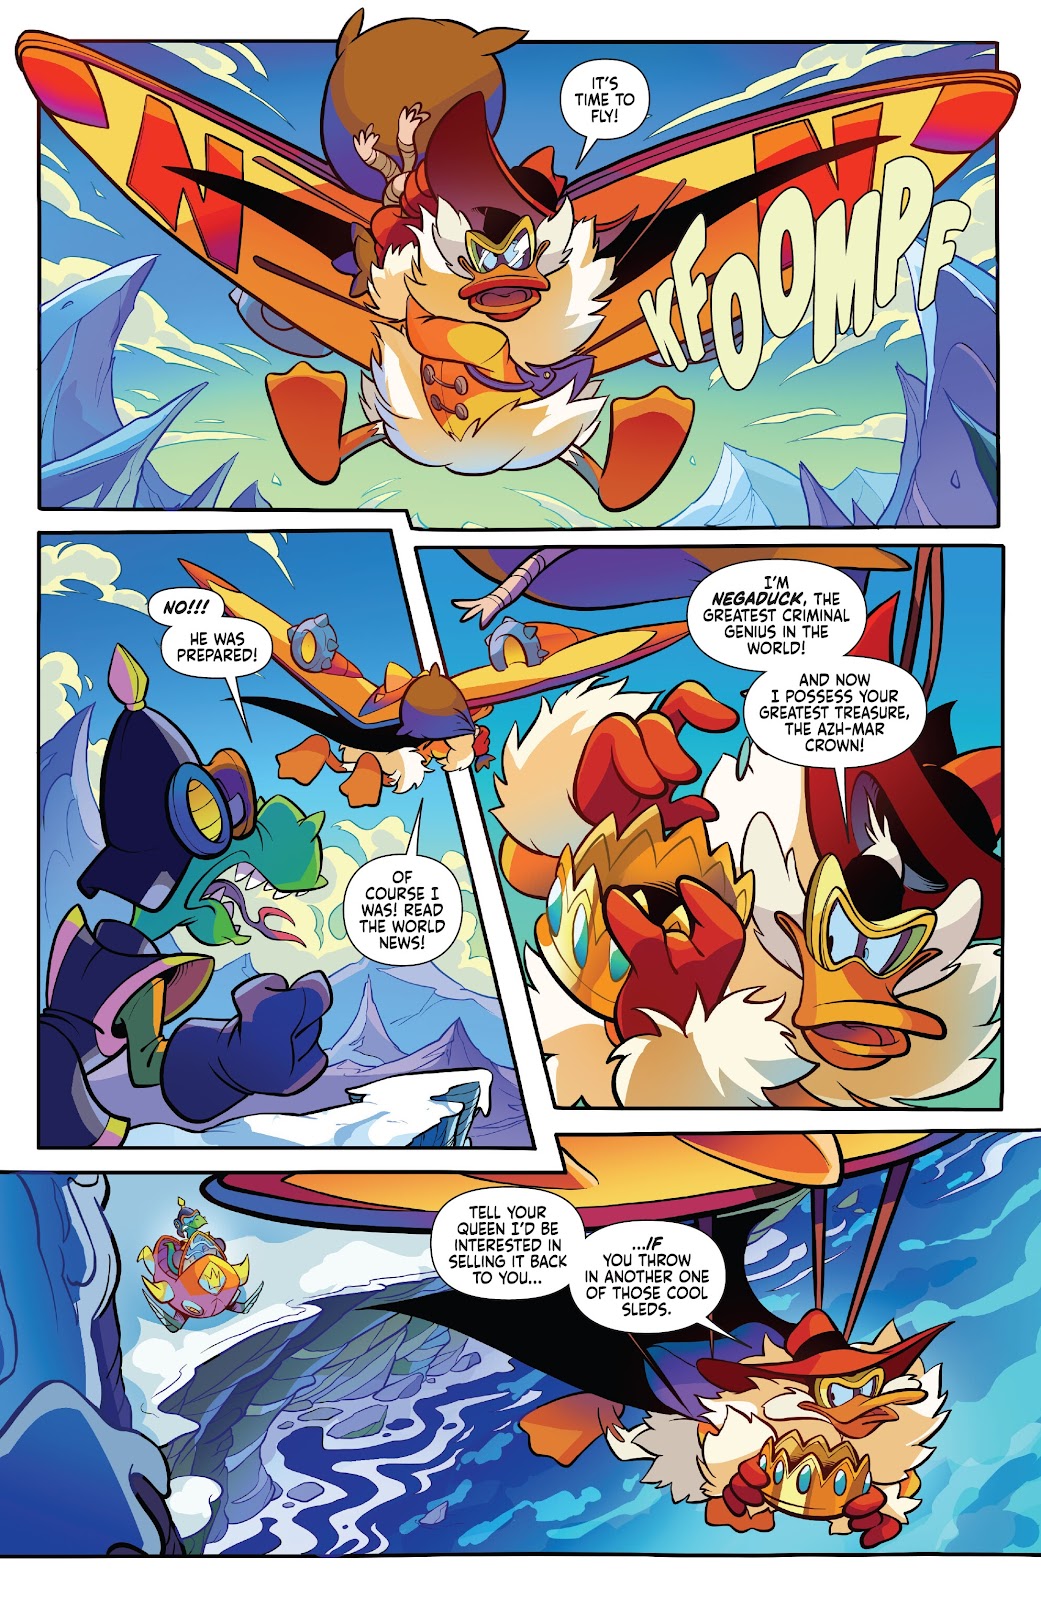 Darkwing Duck: Negaduck issue 5 - Page 11